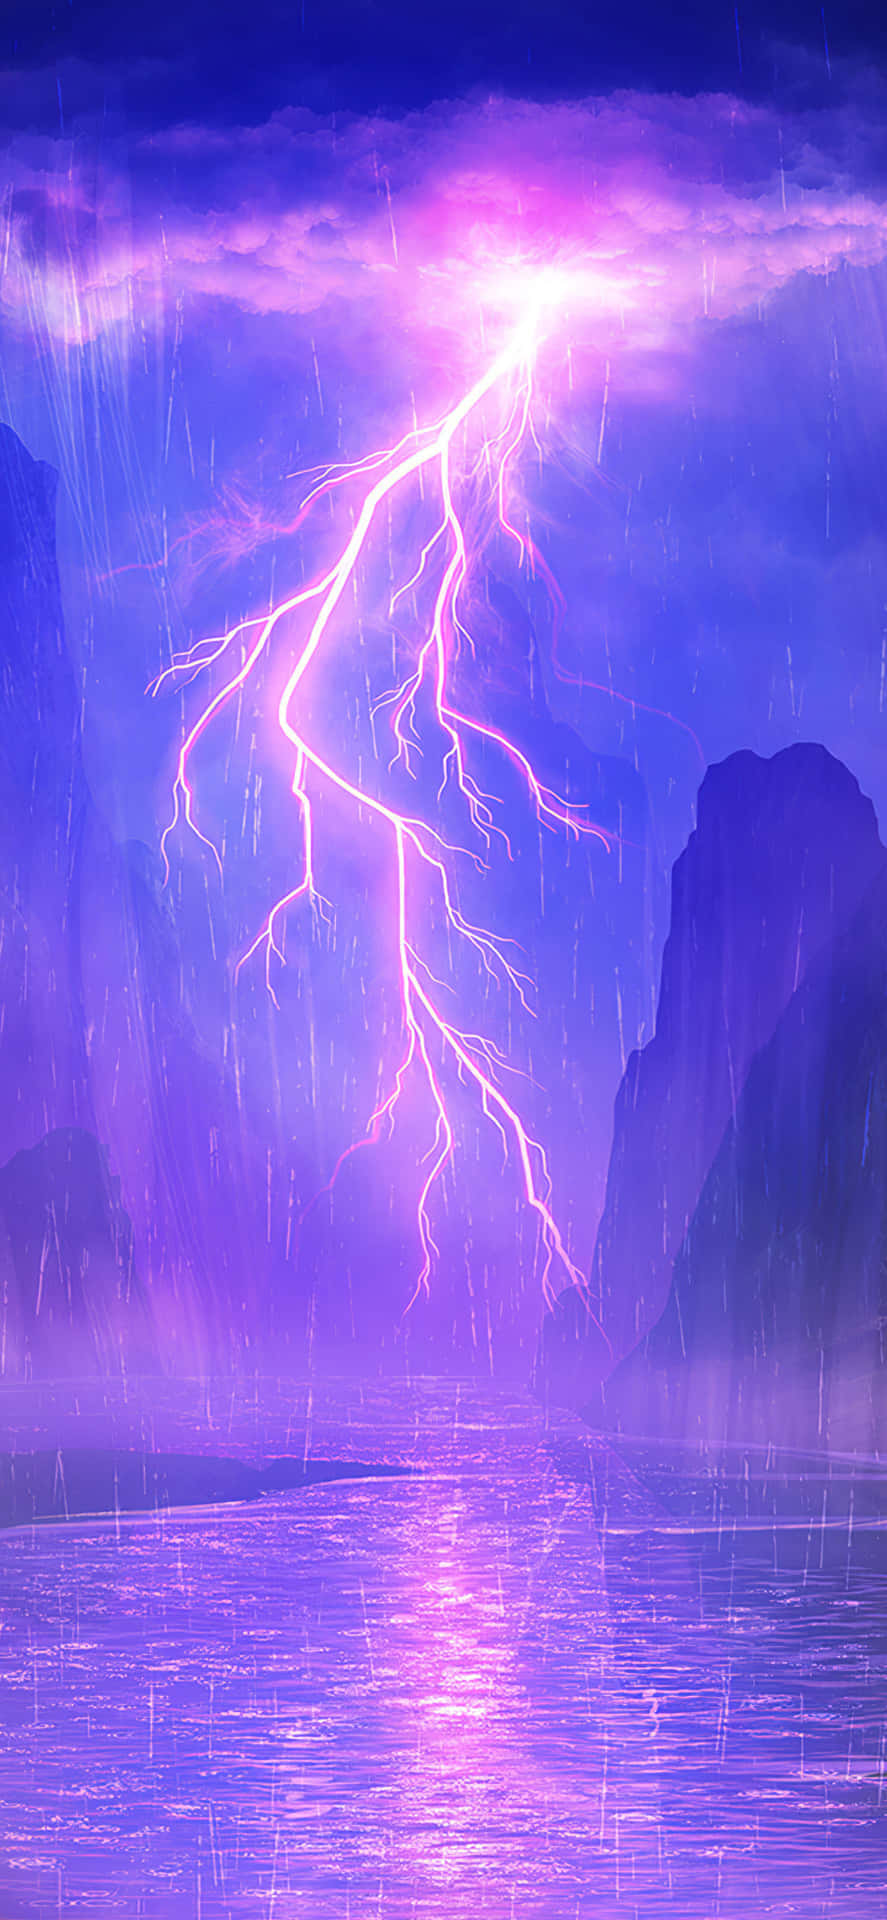 Purple Lightning Strike Over Water.jpg Wallpaper